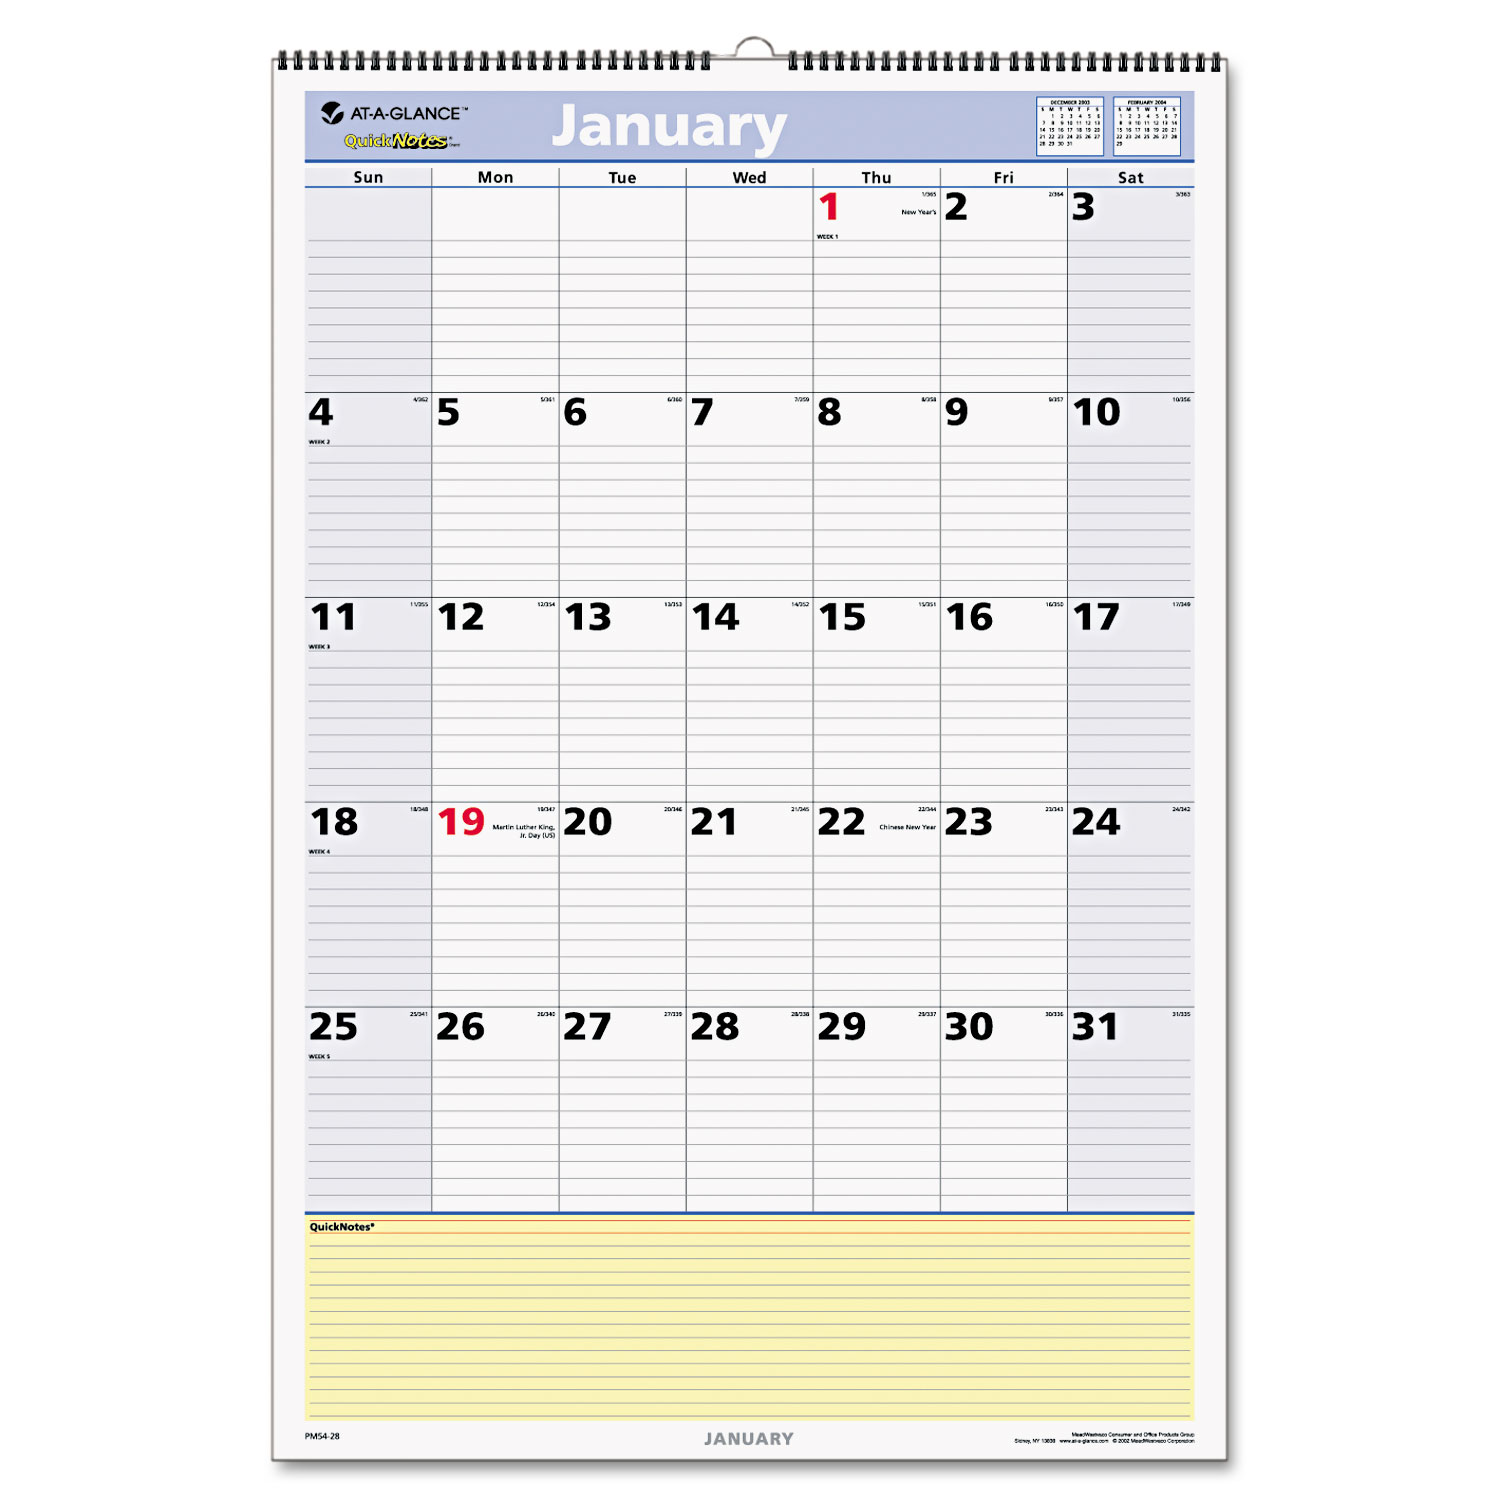 QuickNotes Wall Calendar, 15 1/2 x 22 3/4, 2018-2019